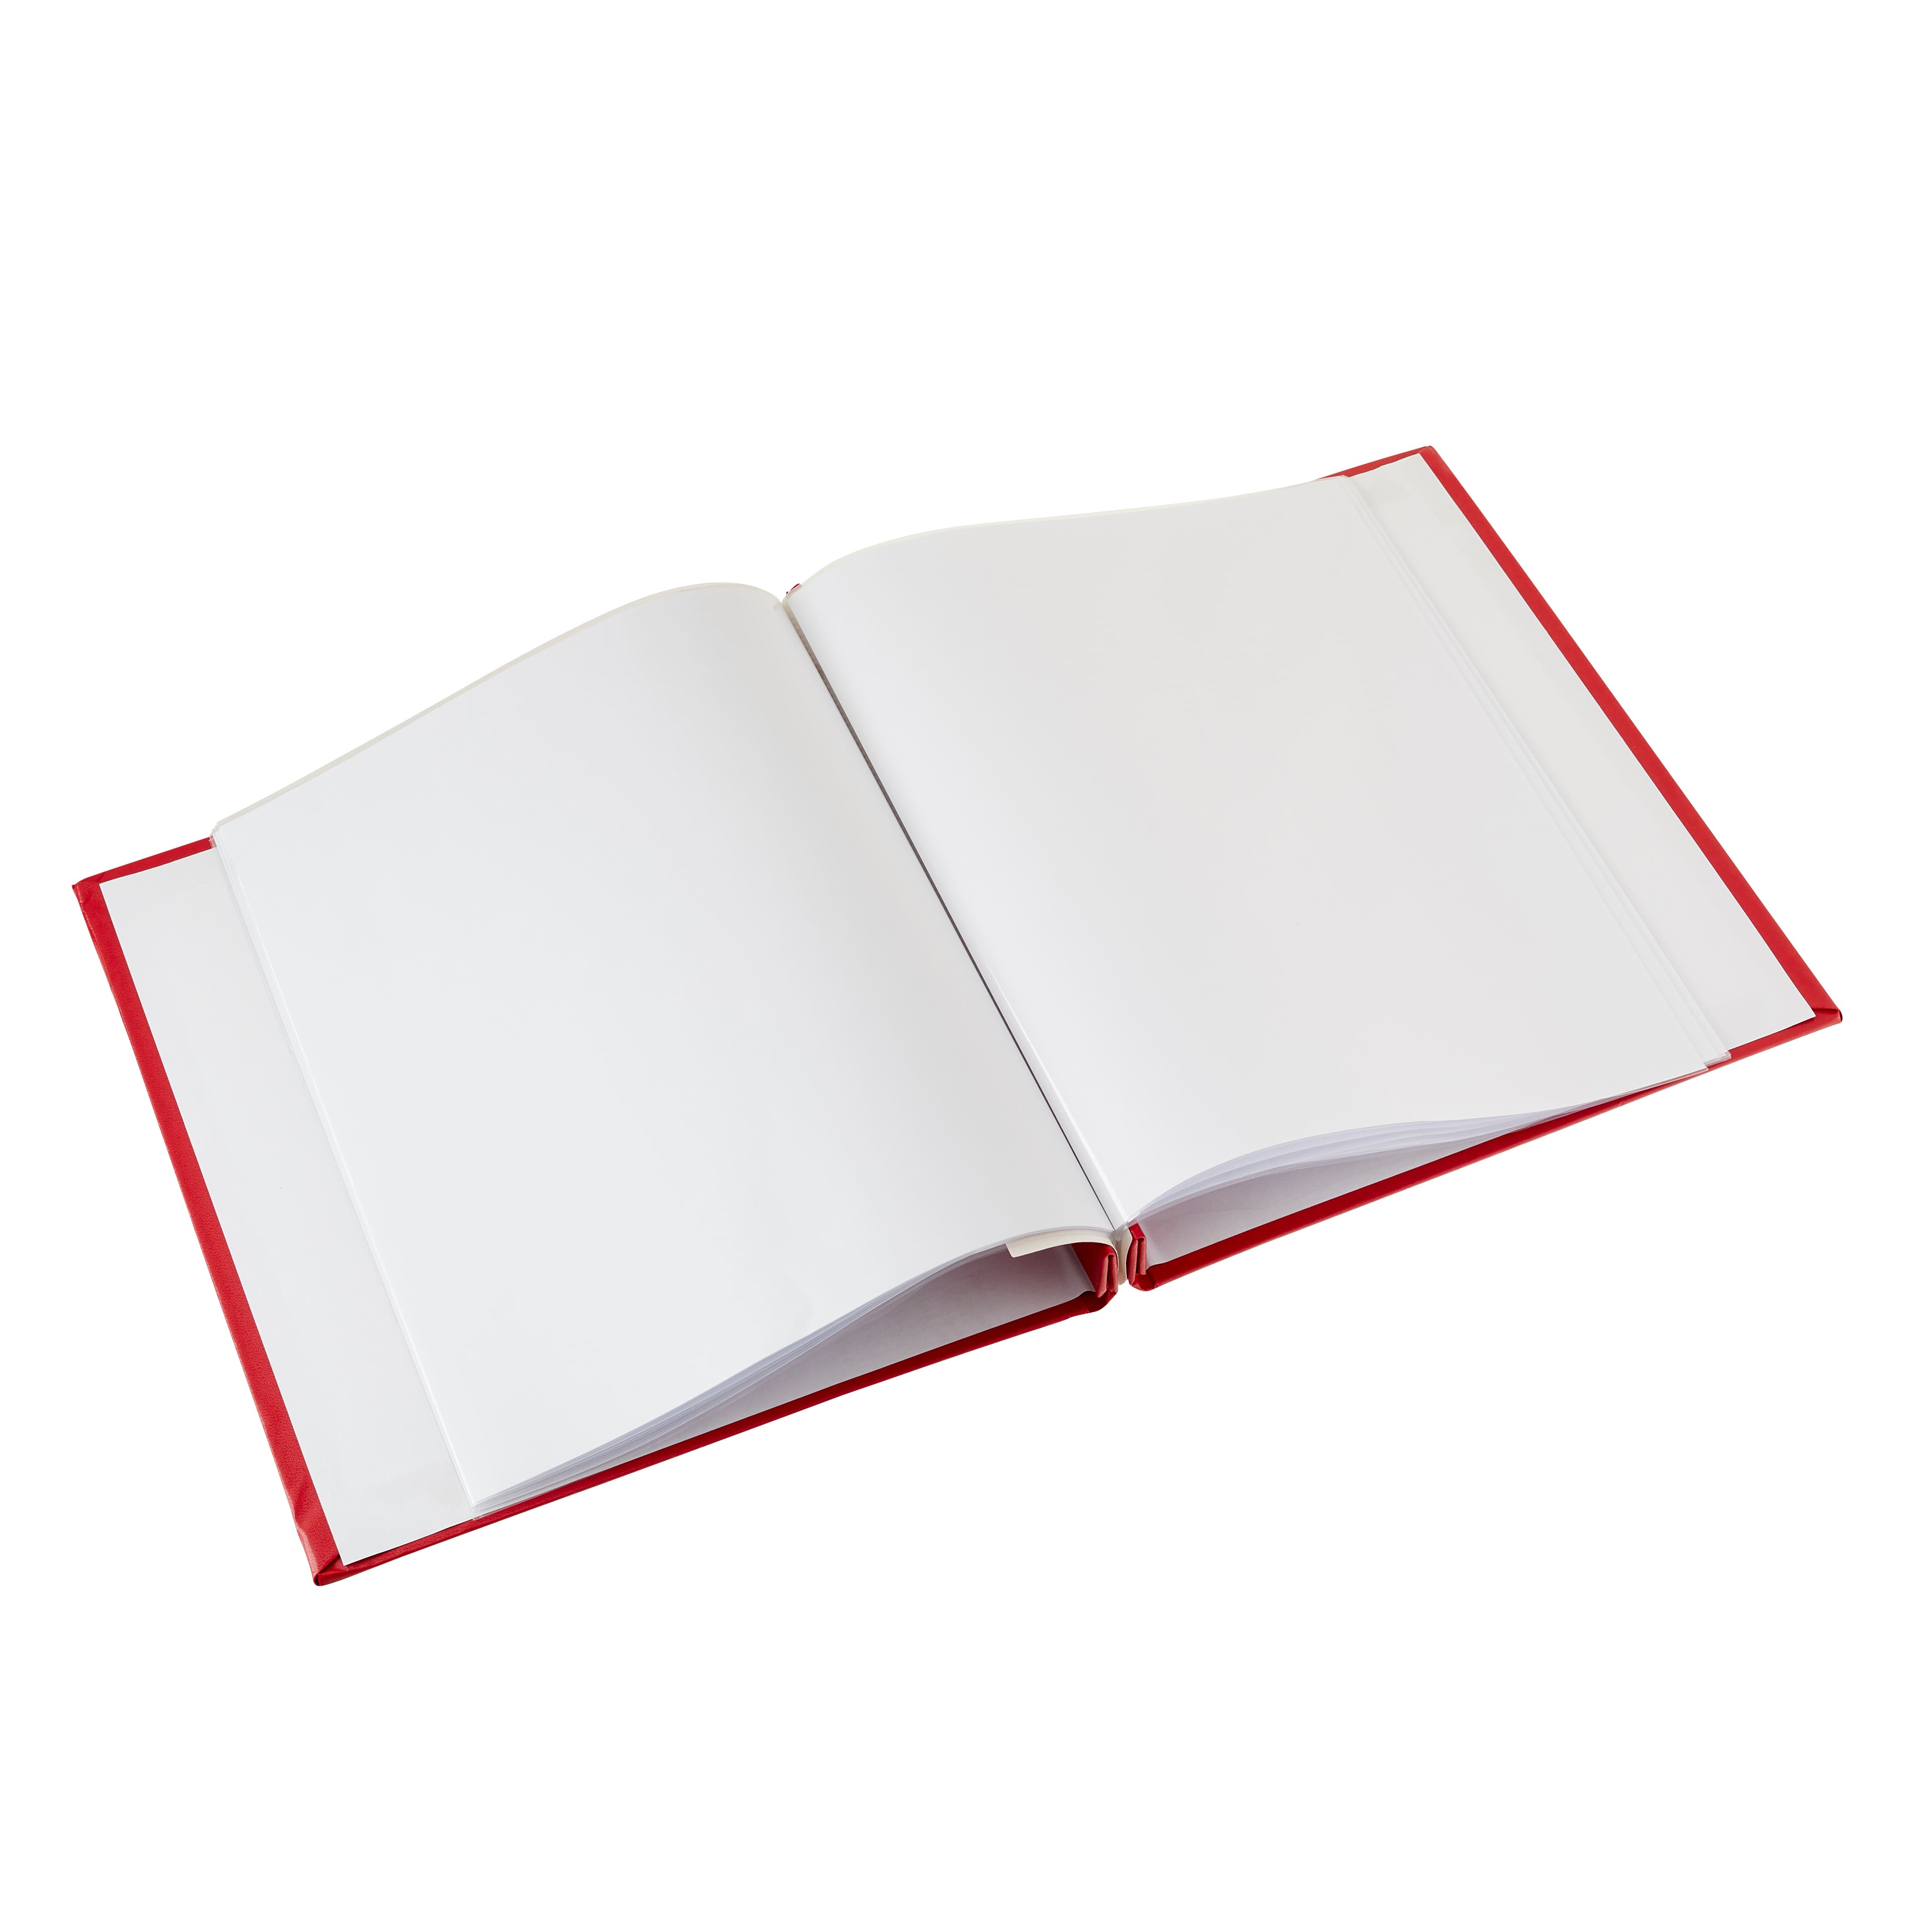 Portfolio Gifted Memories 8x8” SCRAPBOOK Album – Scrapbooksrus